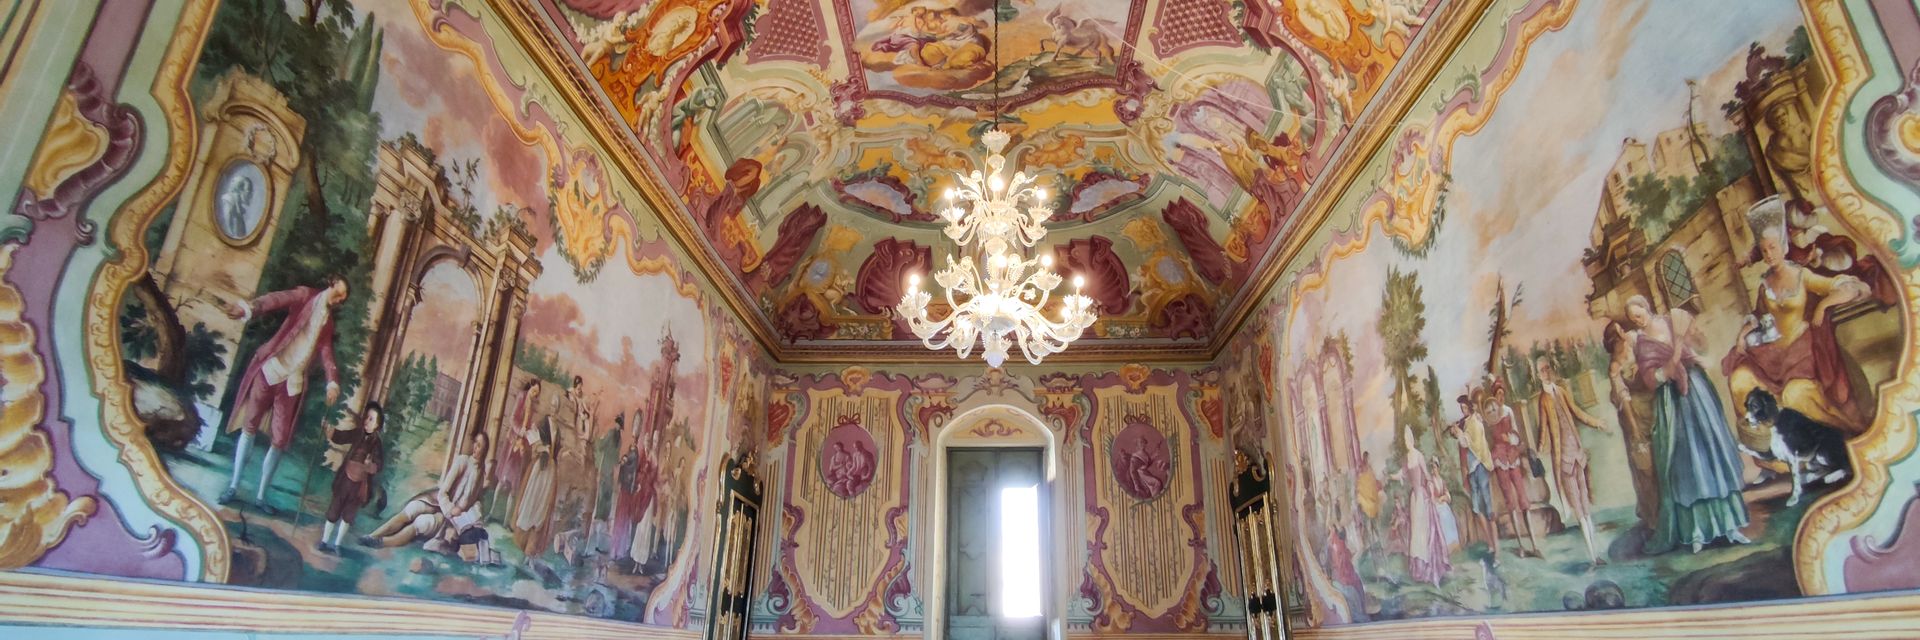 Ducal Palace of Martina Franca